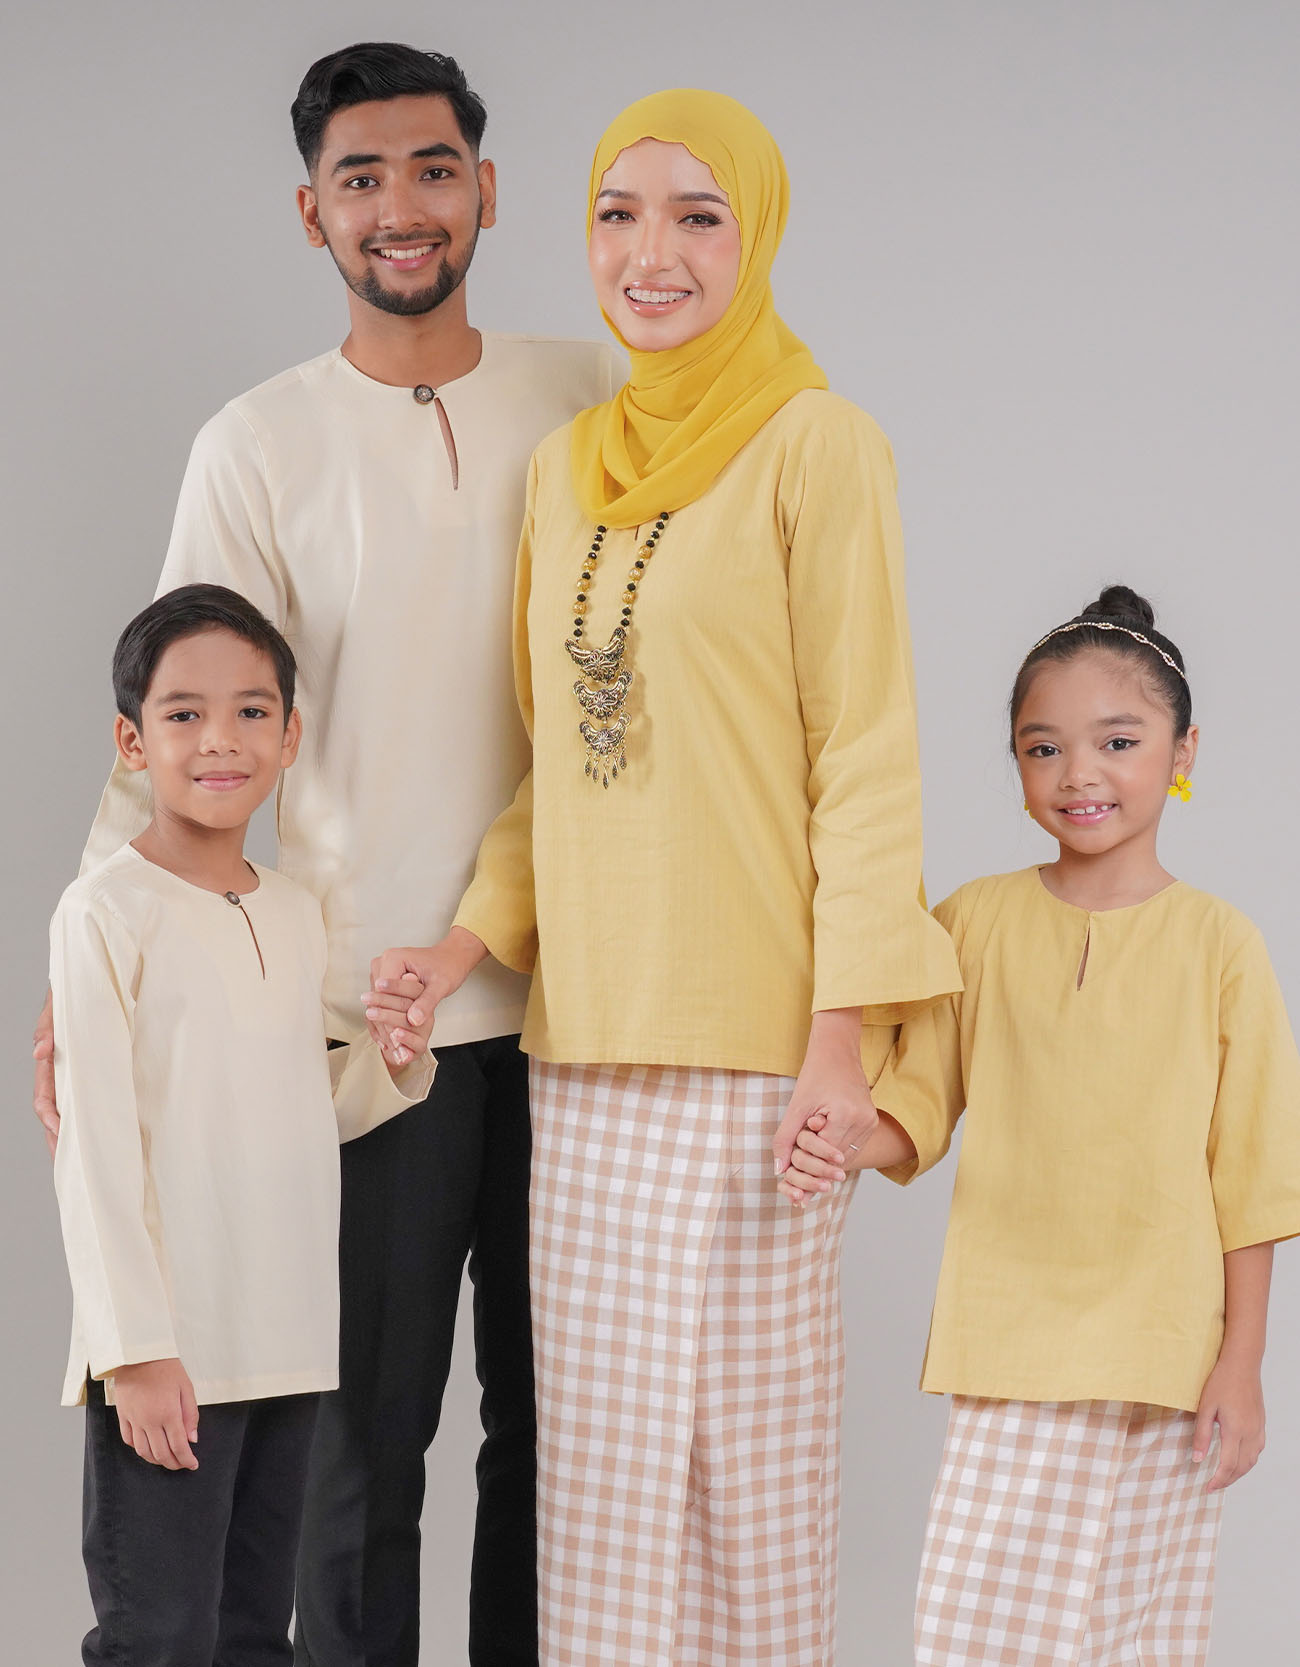 Kemboja Kurung Kedah Adult - 02 Yellow